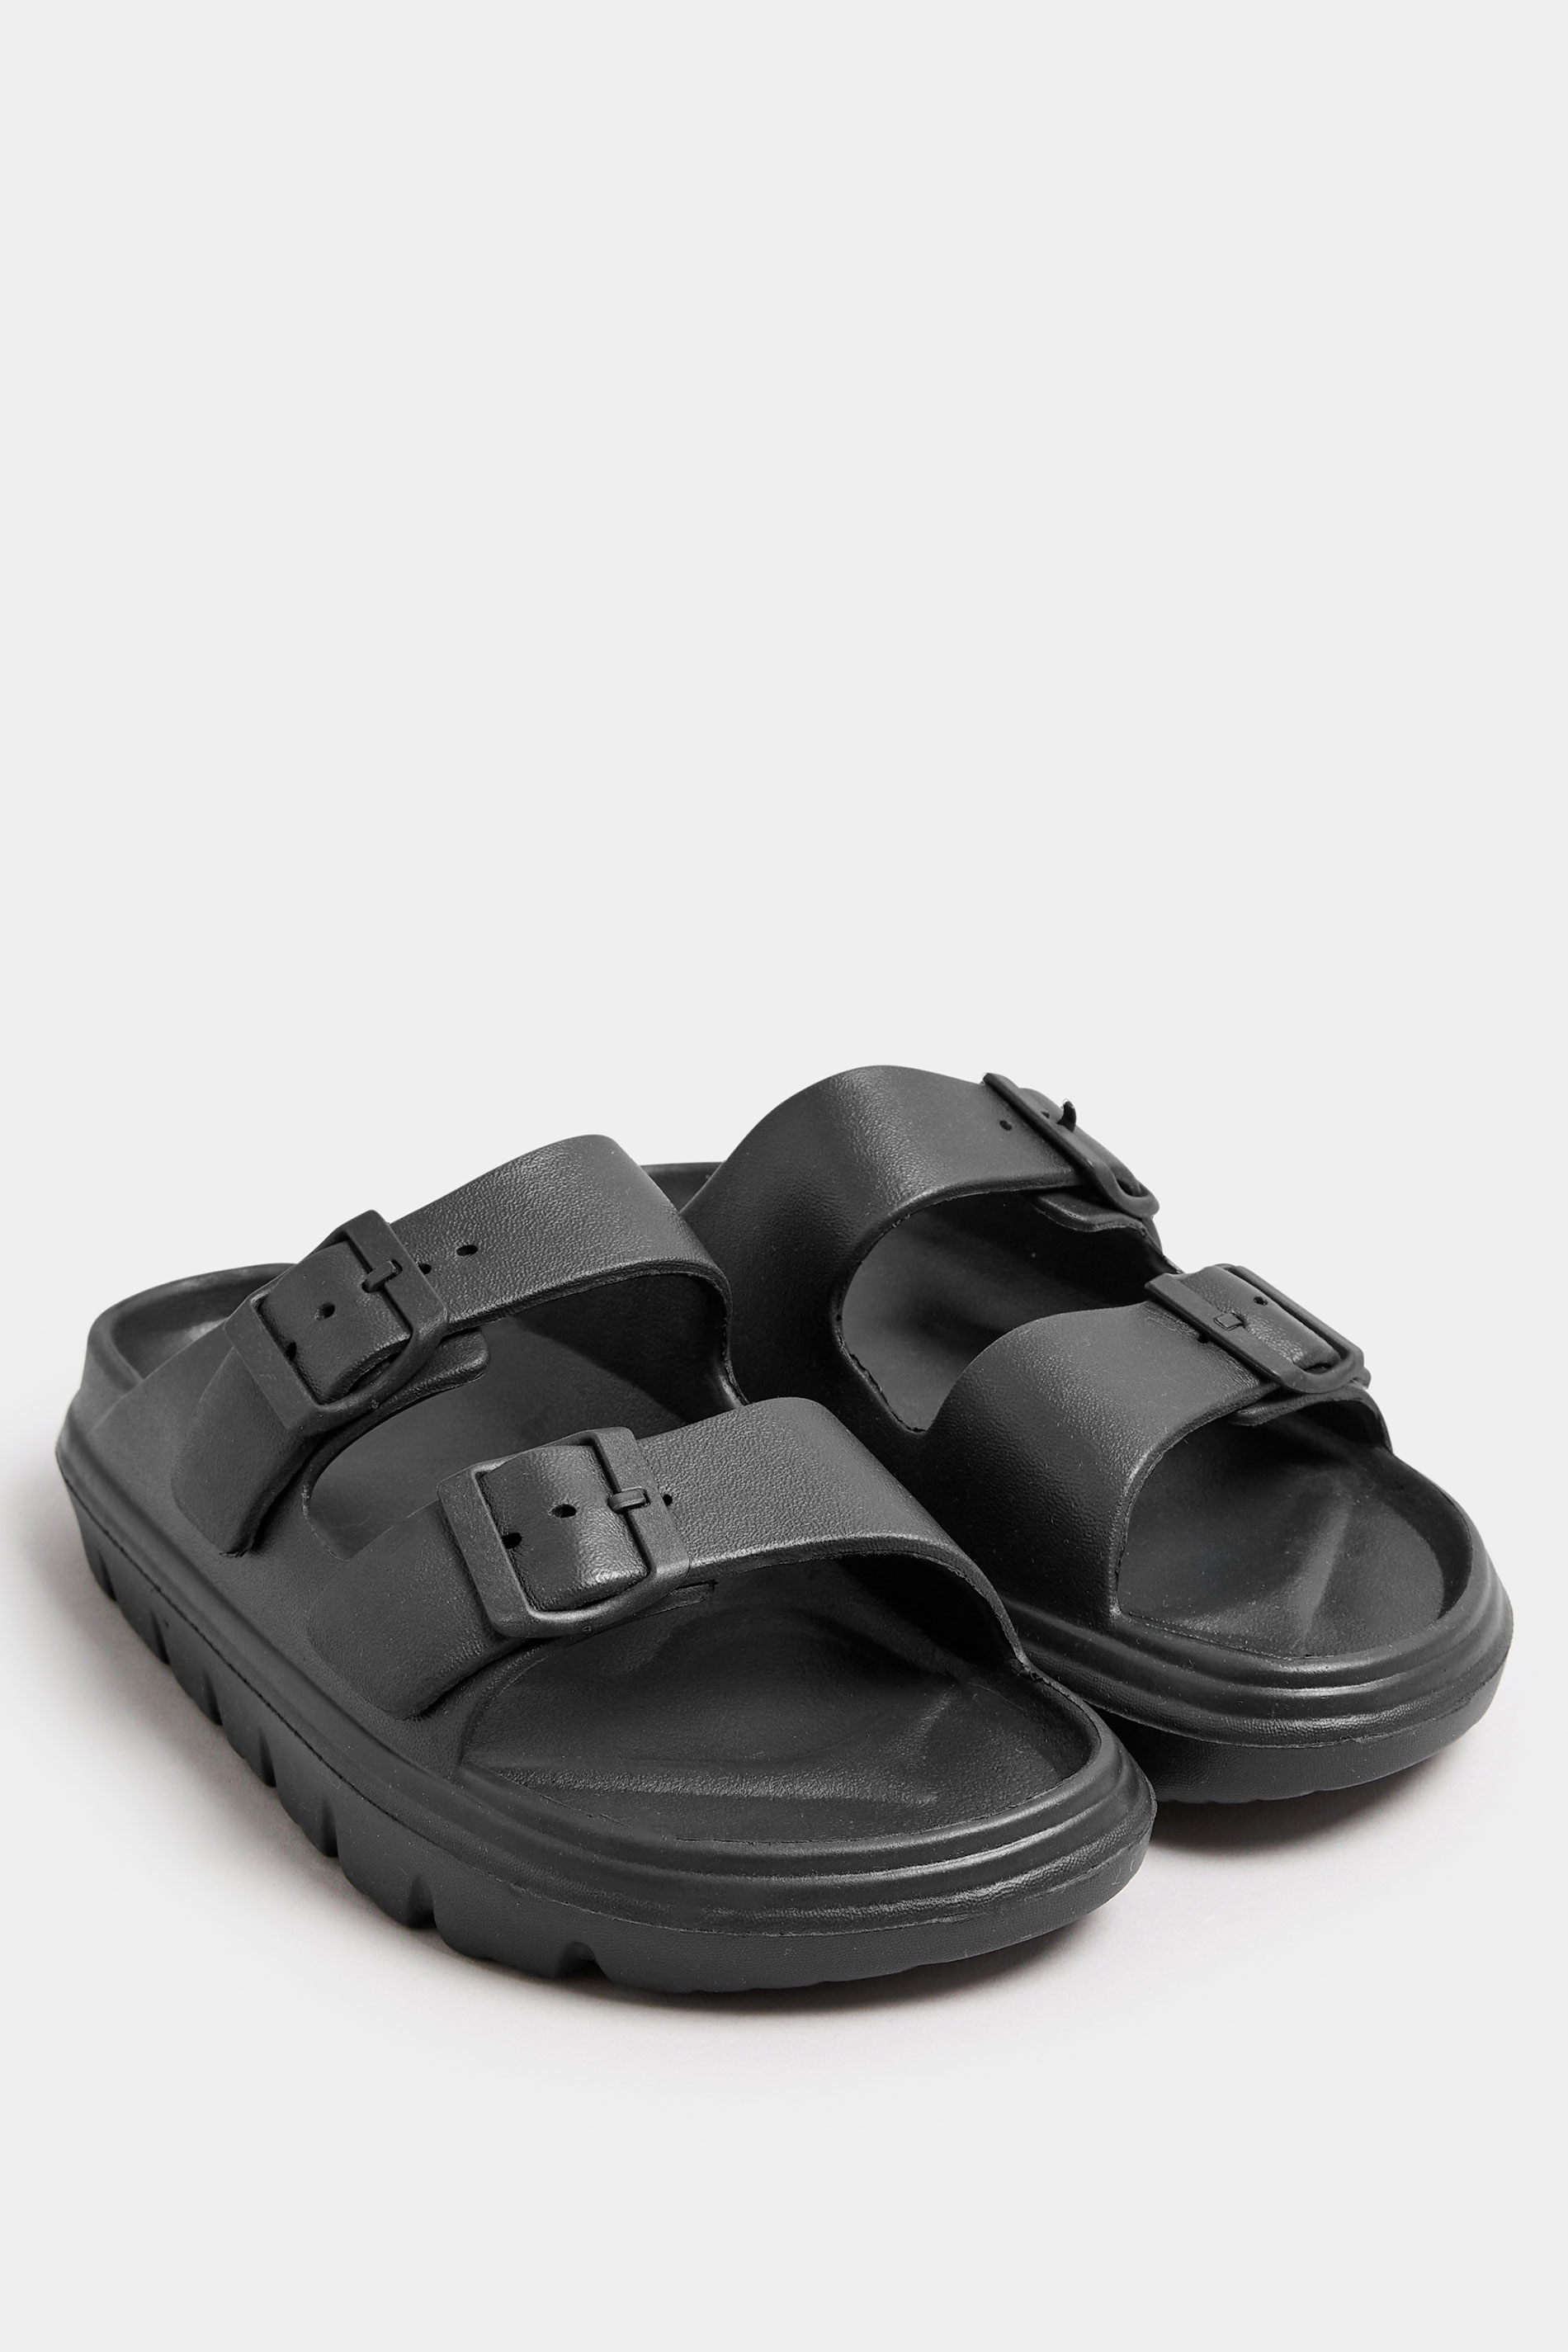 Black Platform EVA Sandals | Yours Clothing 2